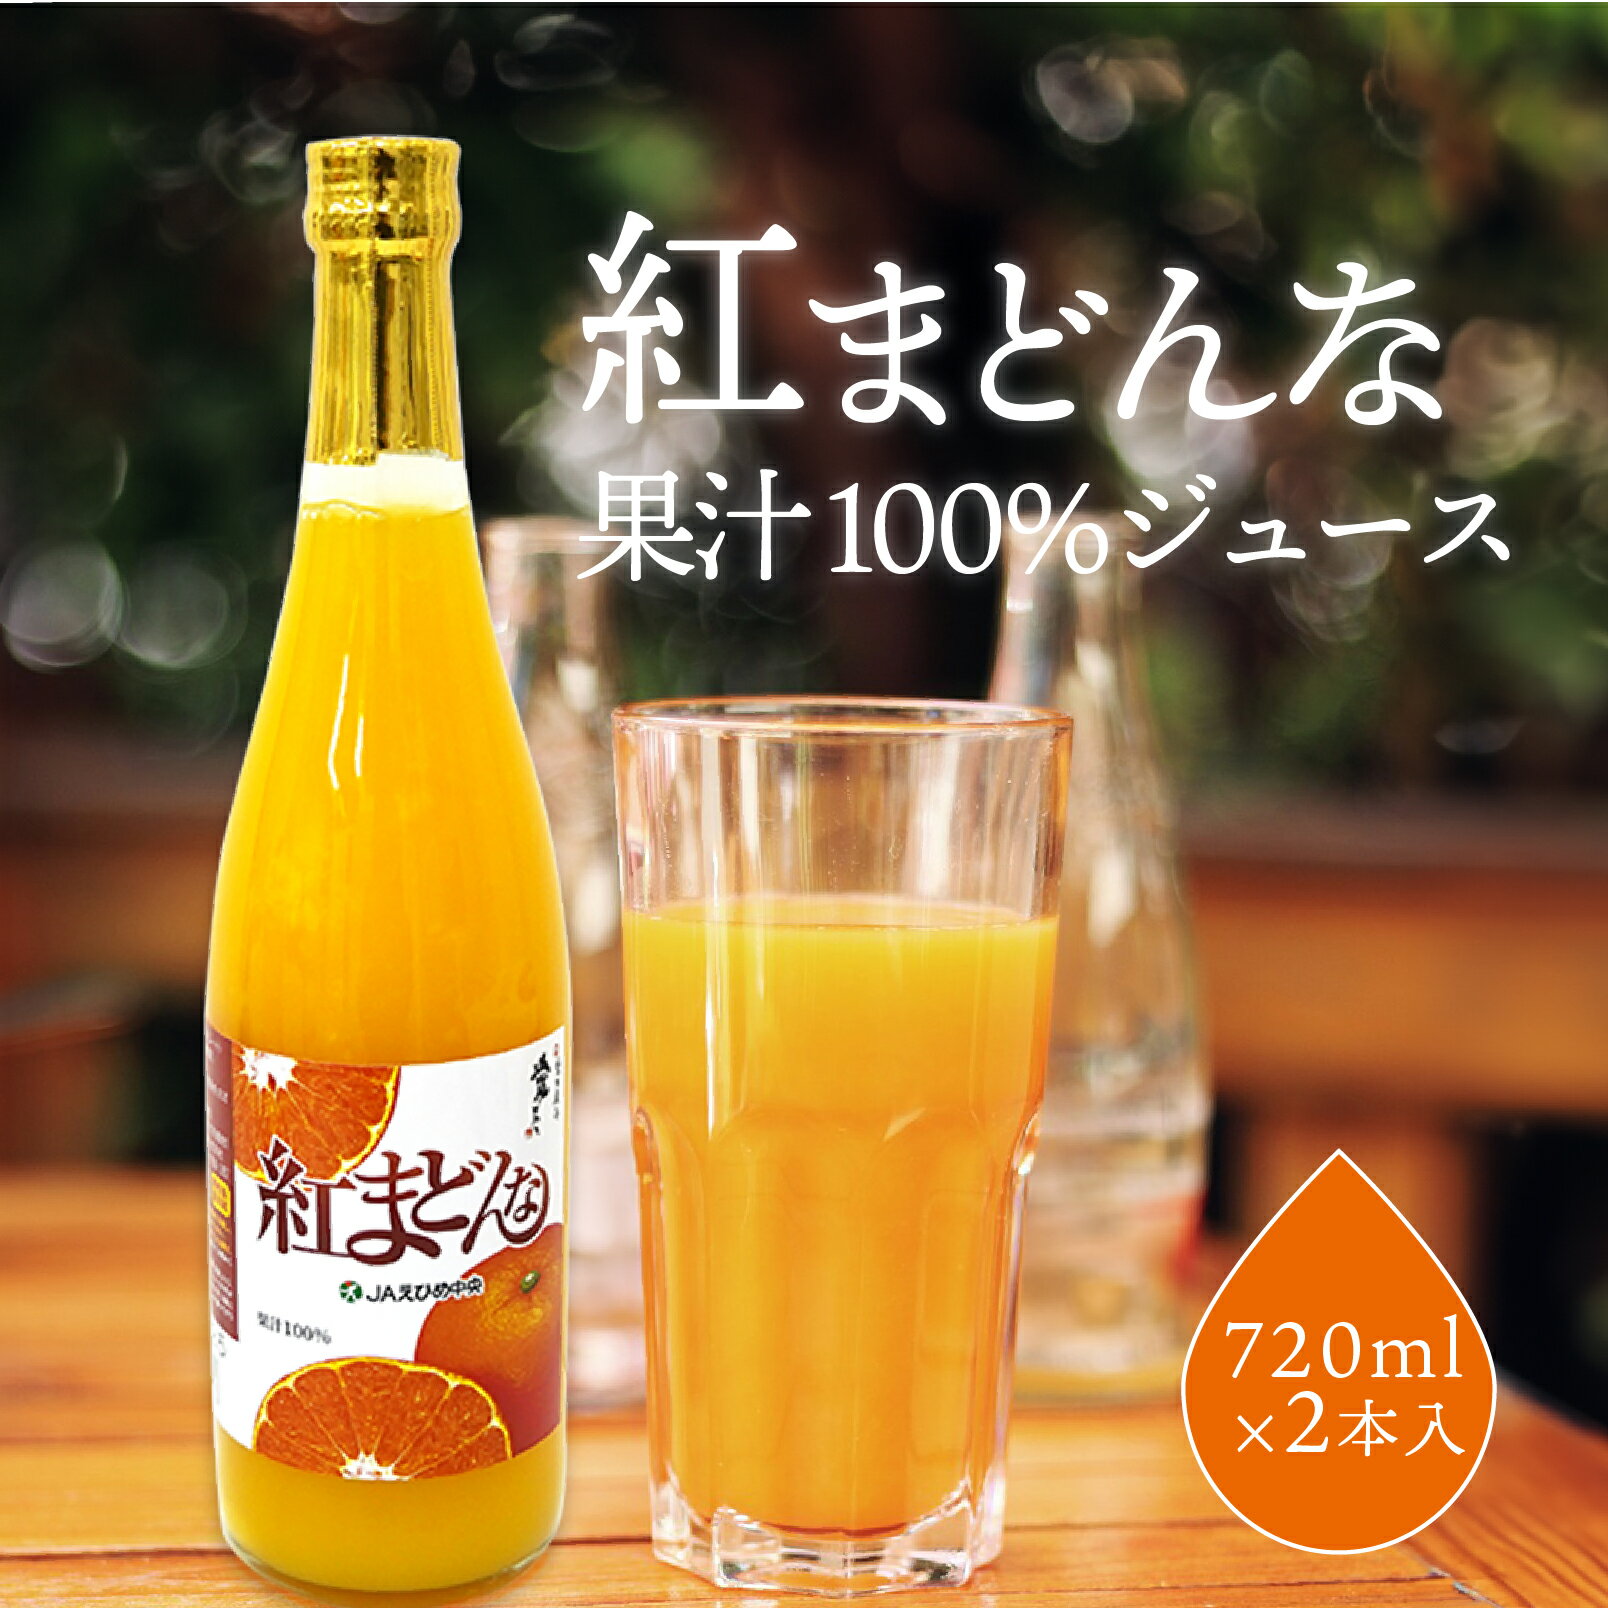 オレンジジュース ジュース 紅まどんなジュース JAえひめ 愛媛県産 720ml×2本 ストレート ジュース みかん 果汁100% 紅マドンナ ミカン ギフト セット